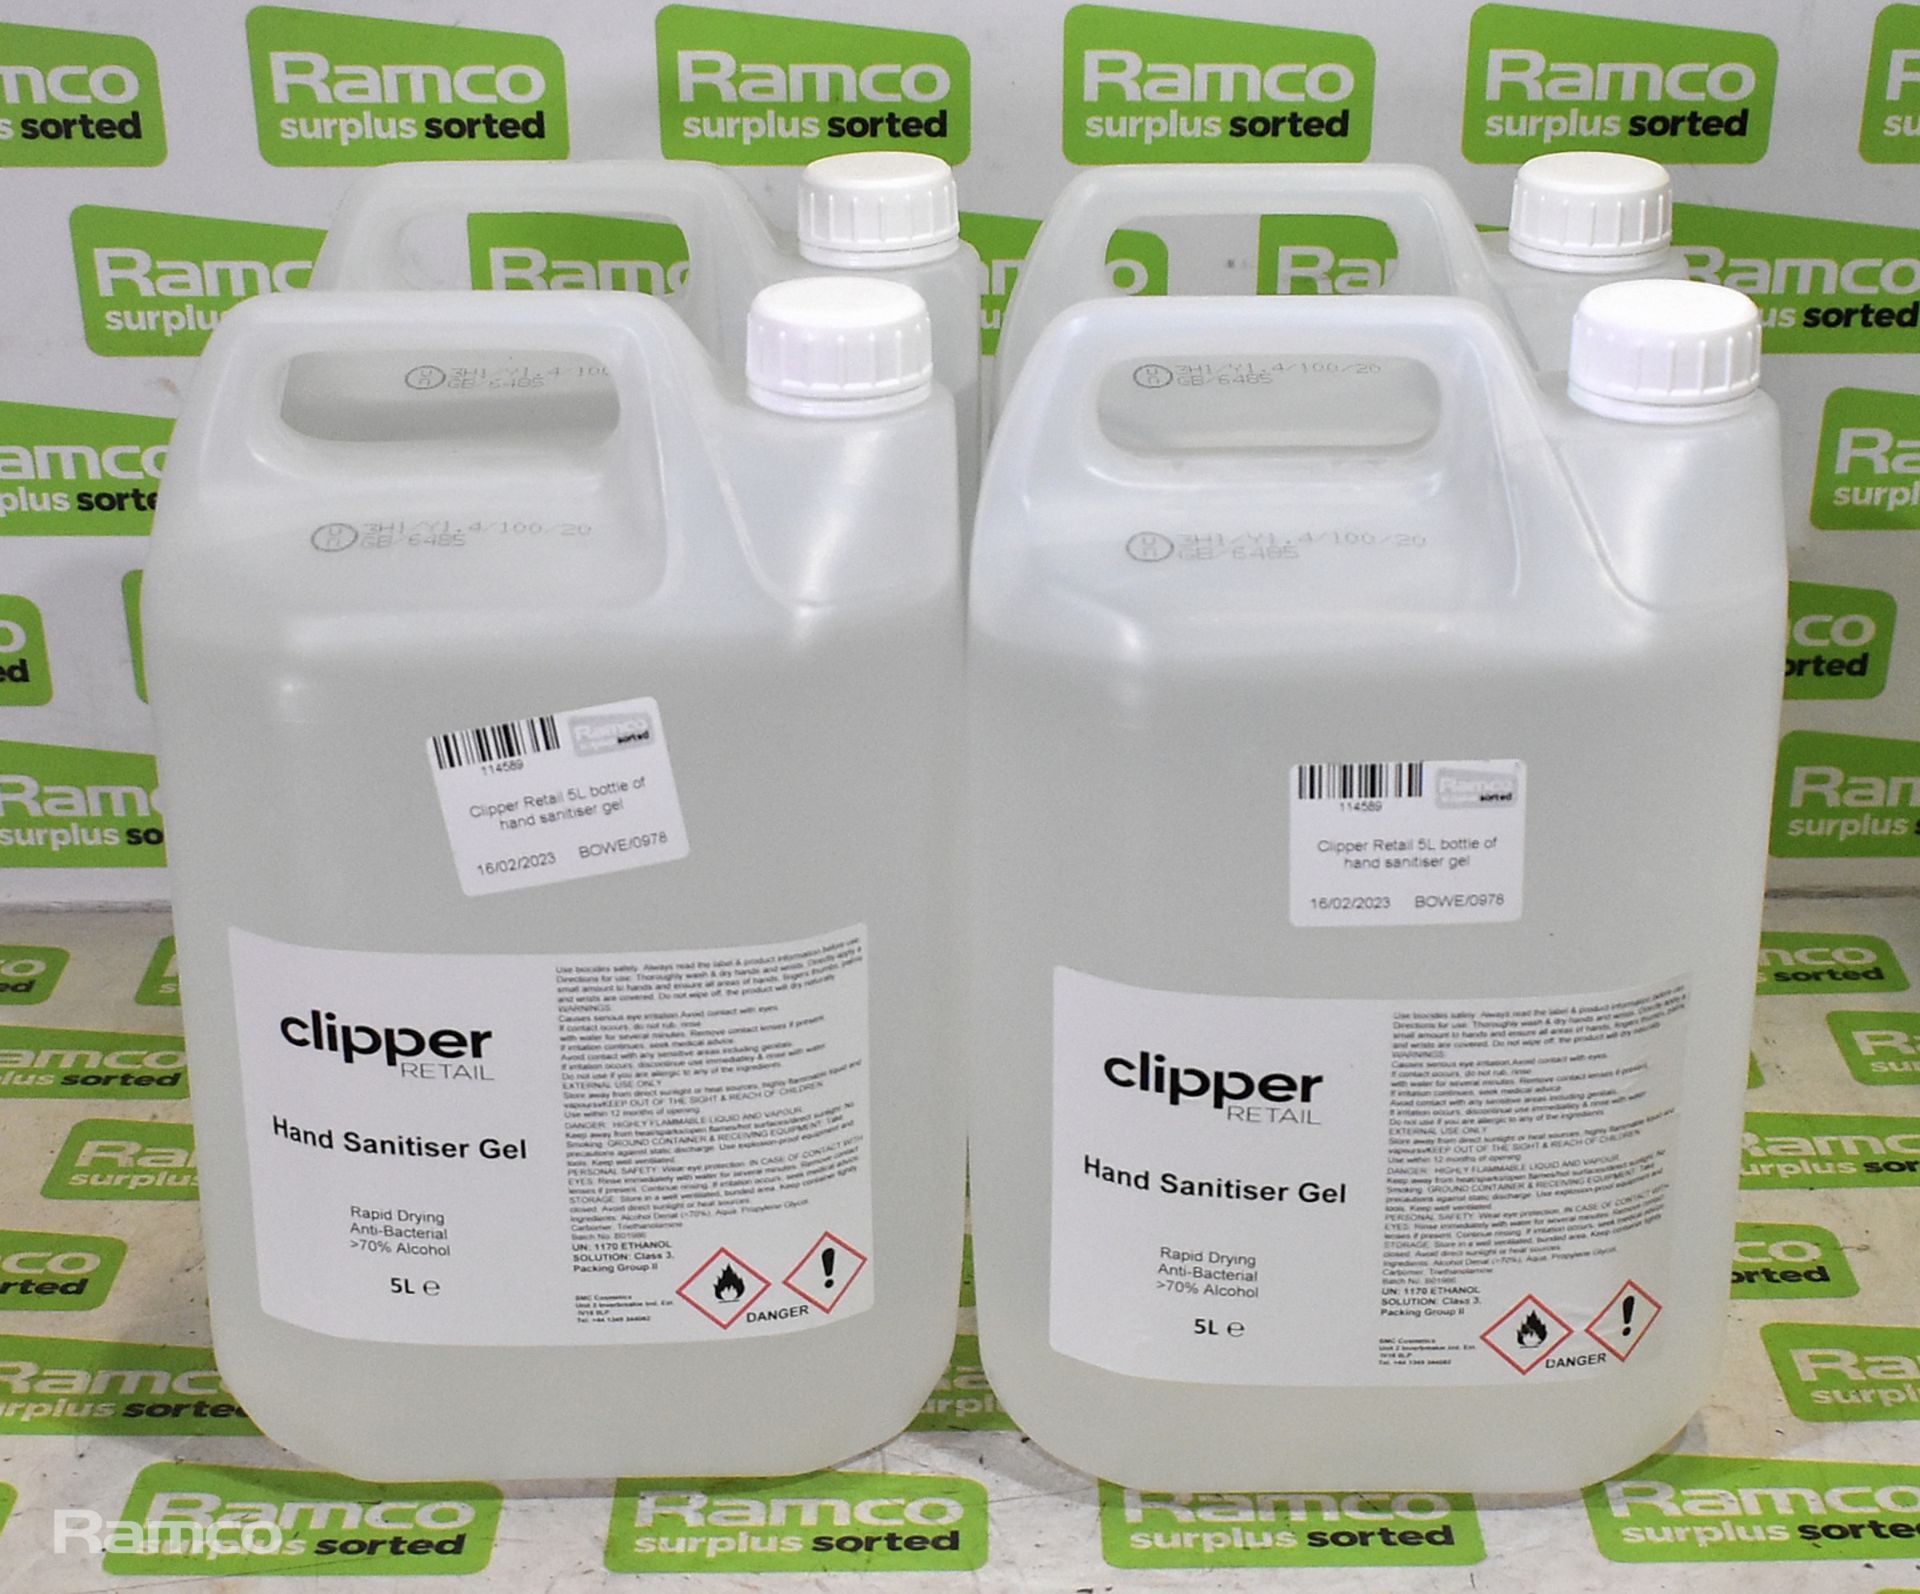 4x Clipper Retail 5L bottles of hand sanitiser gel